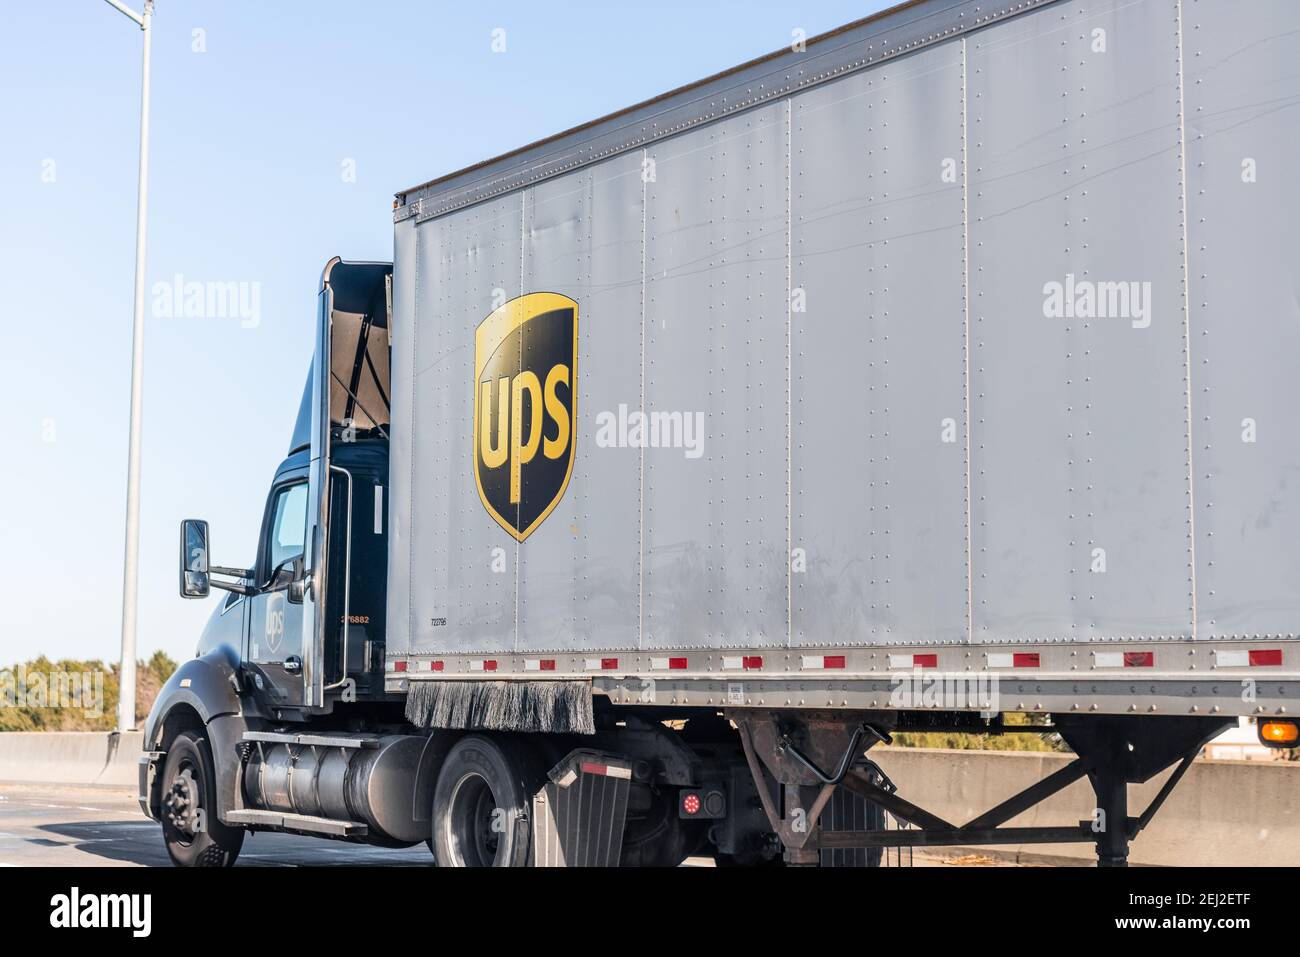 5 gennaio 2021 Concord / CA / USA - UPS (United Parcel Service) camion che guida sulla superstrada nella zona est di San Francisco Bay Foto Stock